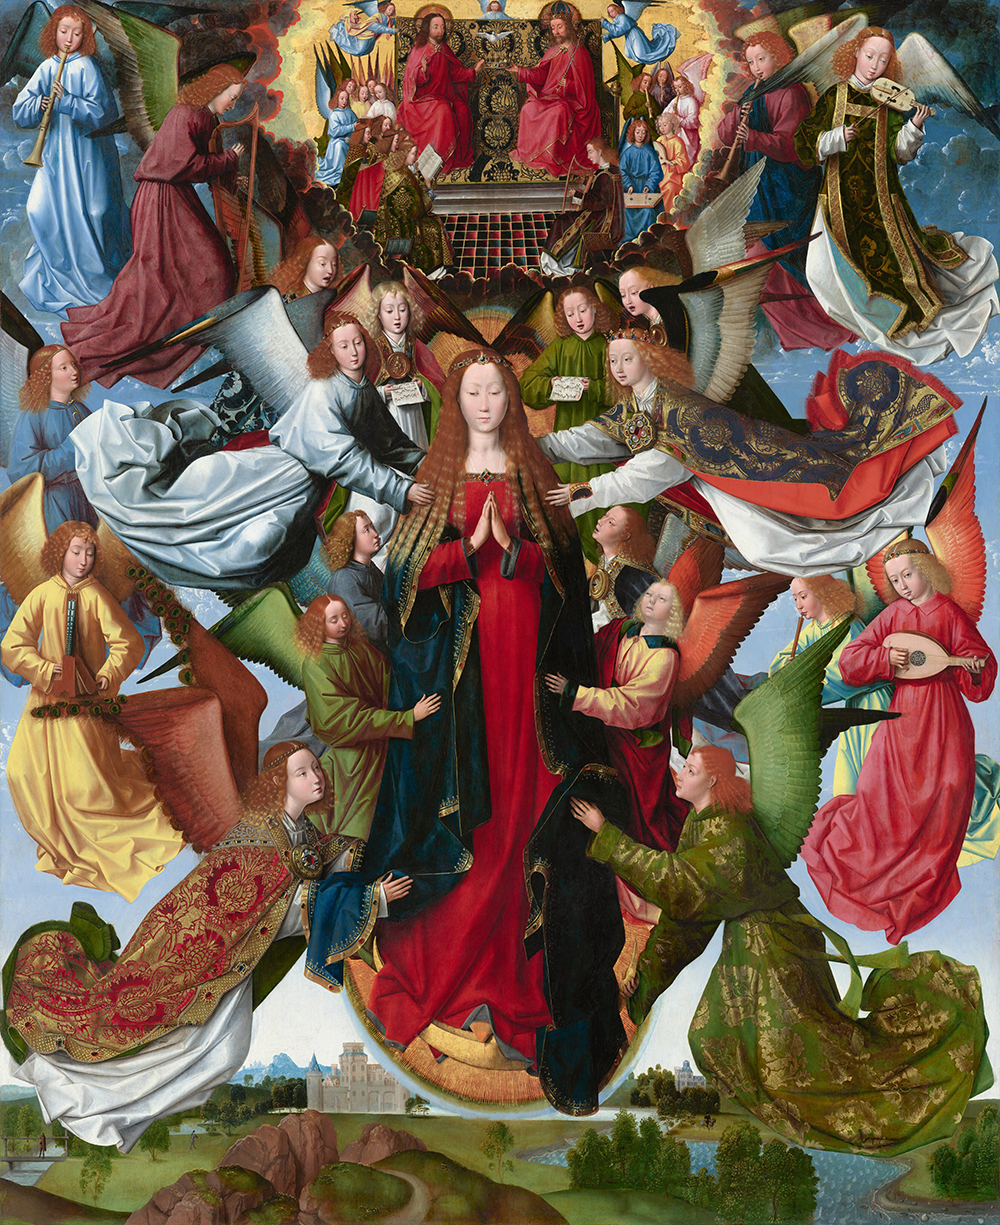 Una mujer vestida con túnicas largas y de pie sobre una luna creciente dorada boca arriba está rodeada por veinte ángeles que la levantan, cantan o tocan instrumentos musicales en esta pintura vertical.